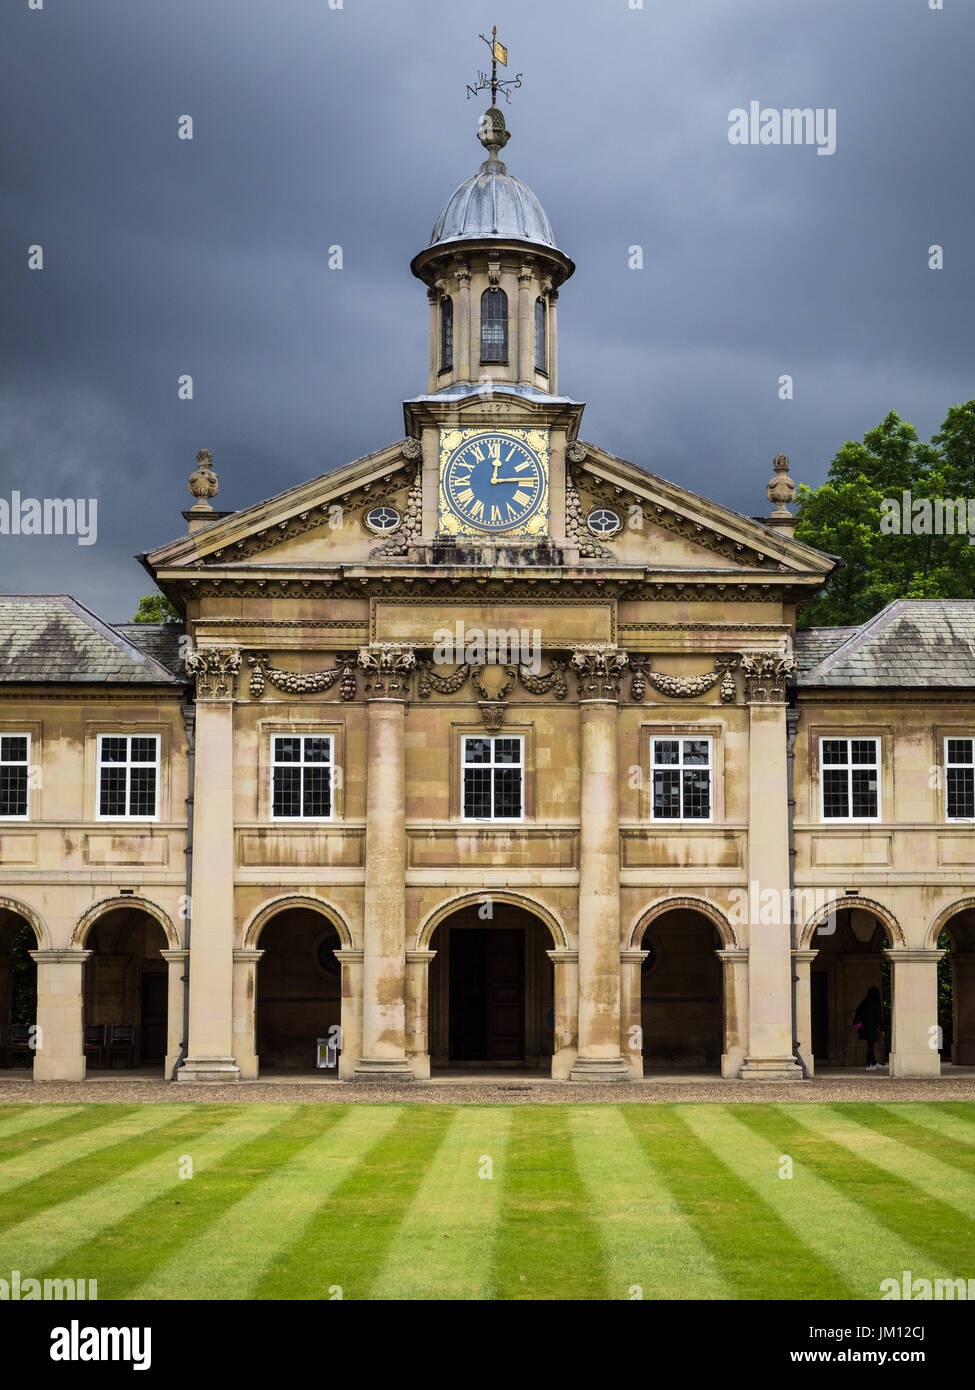 Cambridge - l'horloge et la Cour avant d'Emmanuel College, qui fait partie de l'Université de Cambridge, Royaume-Uni. Le collège a été fondé en 1584. Arch : Wren Banque D'Images